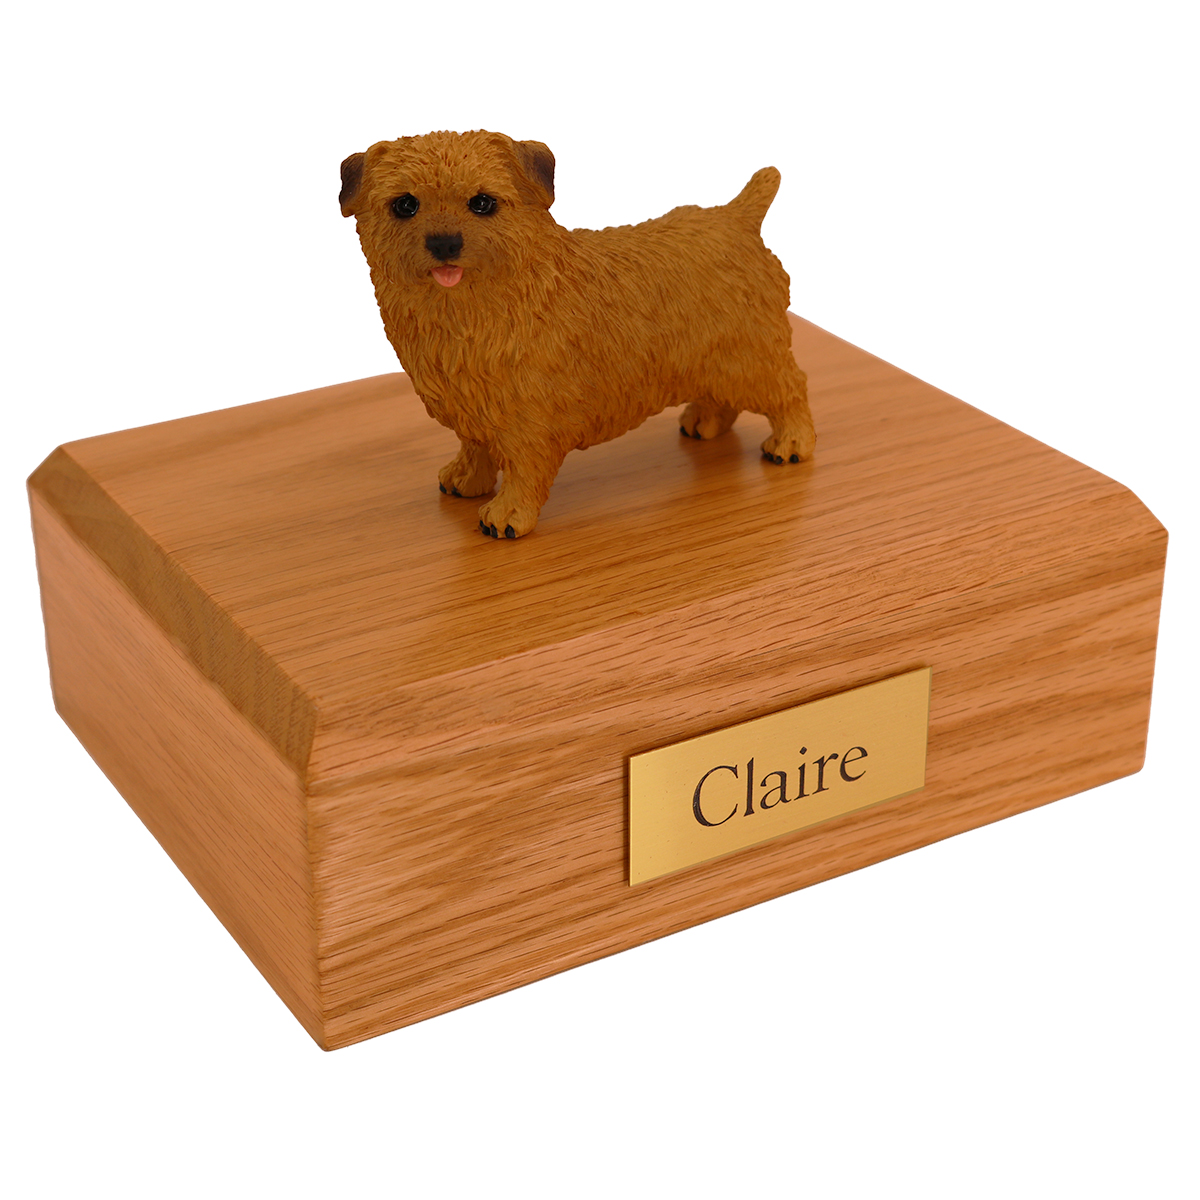 Dog, Norfolk Terrier - Figurine Urn